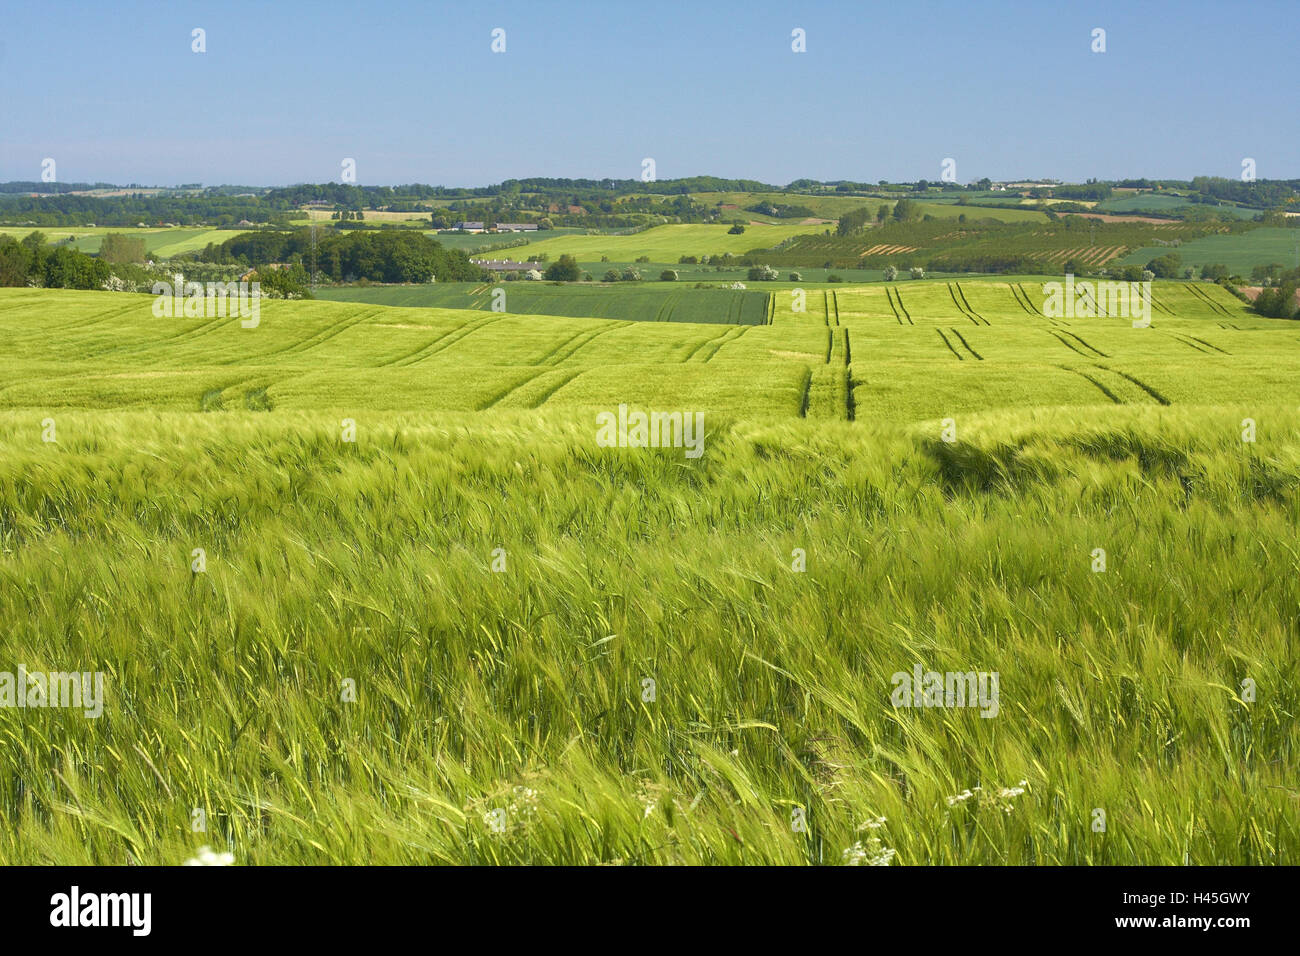 Danemark Felder Getreide Landschaft Landwirtschaft Stockfotos Und Bilder Kaufen Alamy